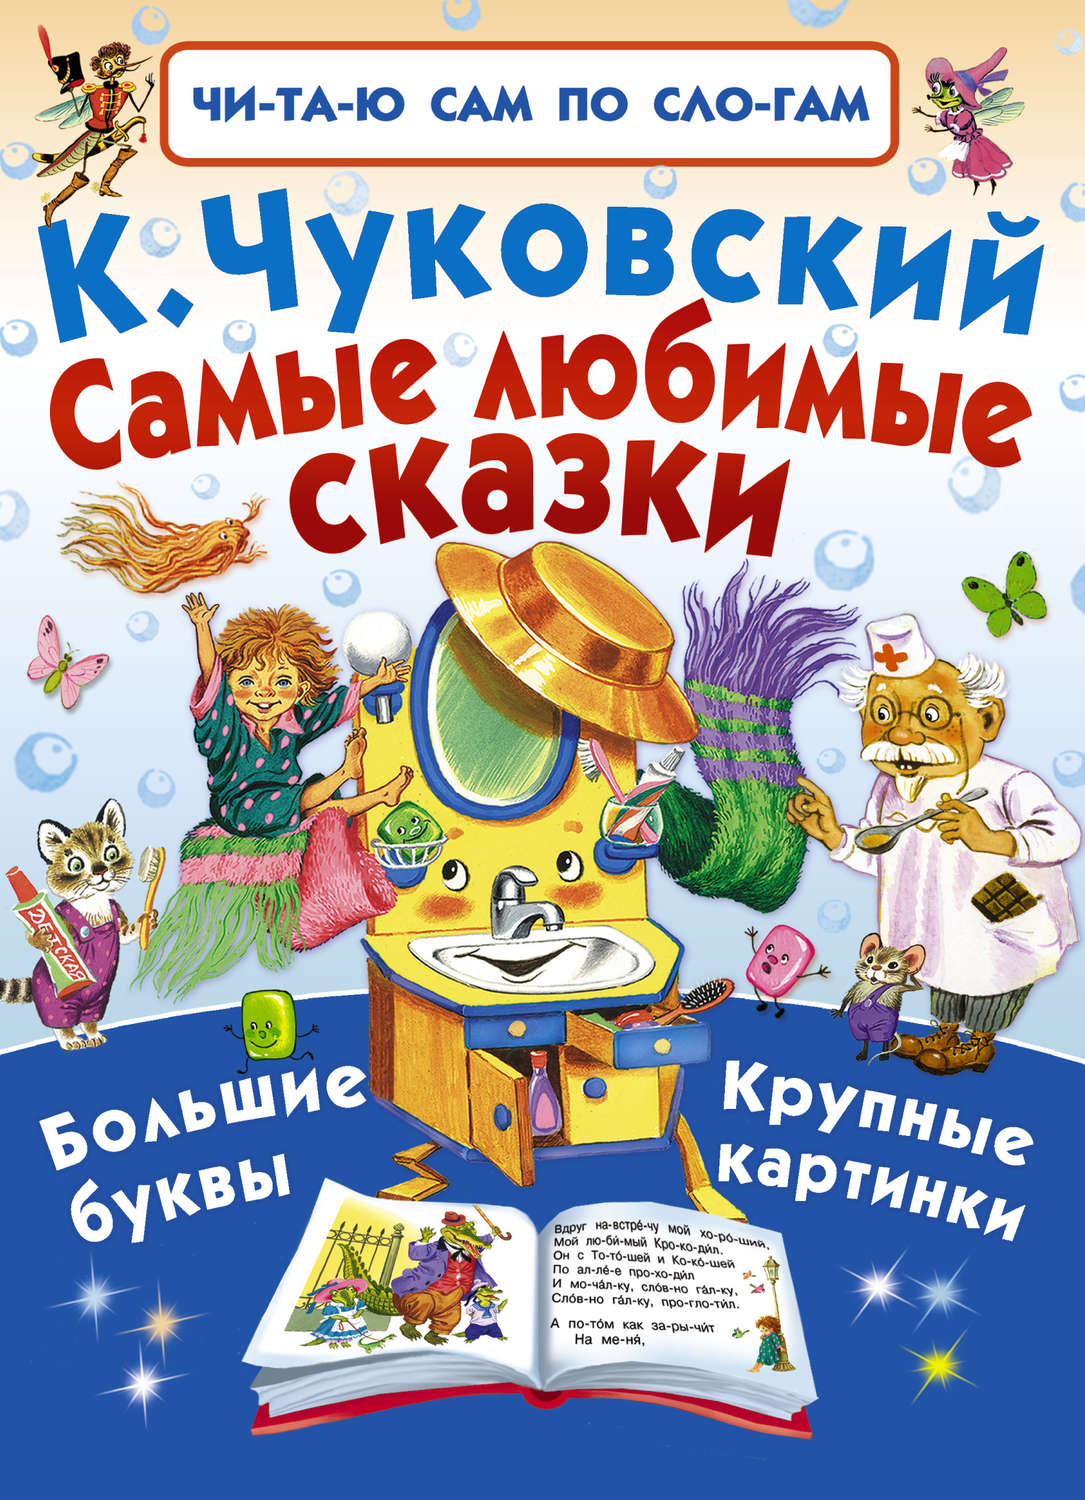 Книги Чуковского для детей